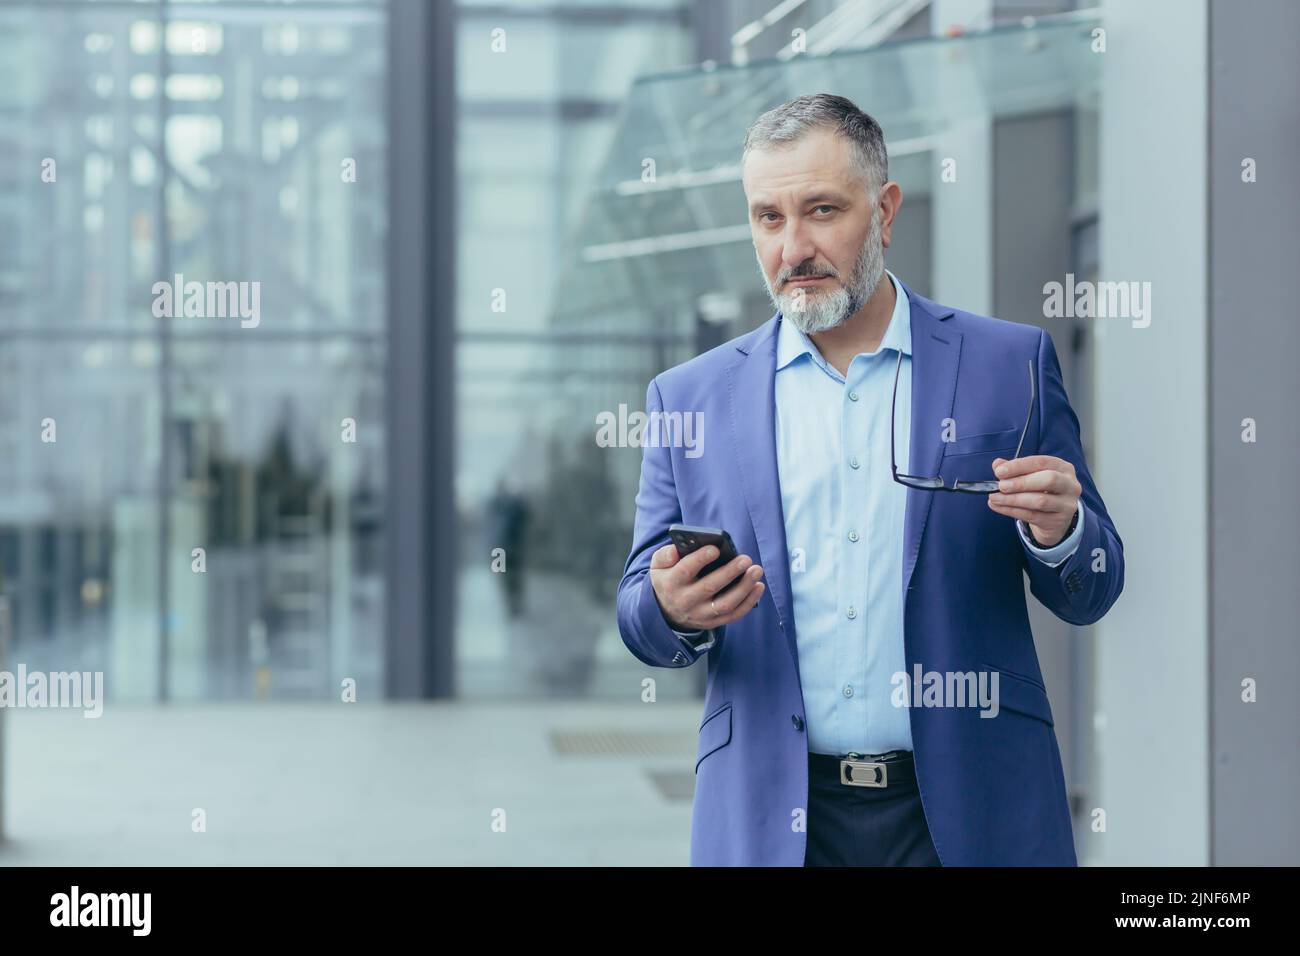 Retrato de un financiero senior de pelo gris, un hombre fuera del edificio de oficinas sosteniendo el teléfono y mirando la cámara, un hombre de negocios caminando Foto de stock